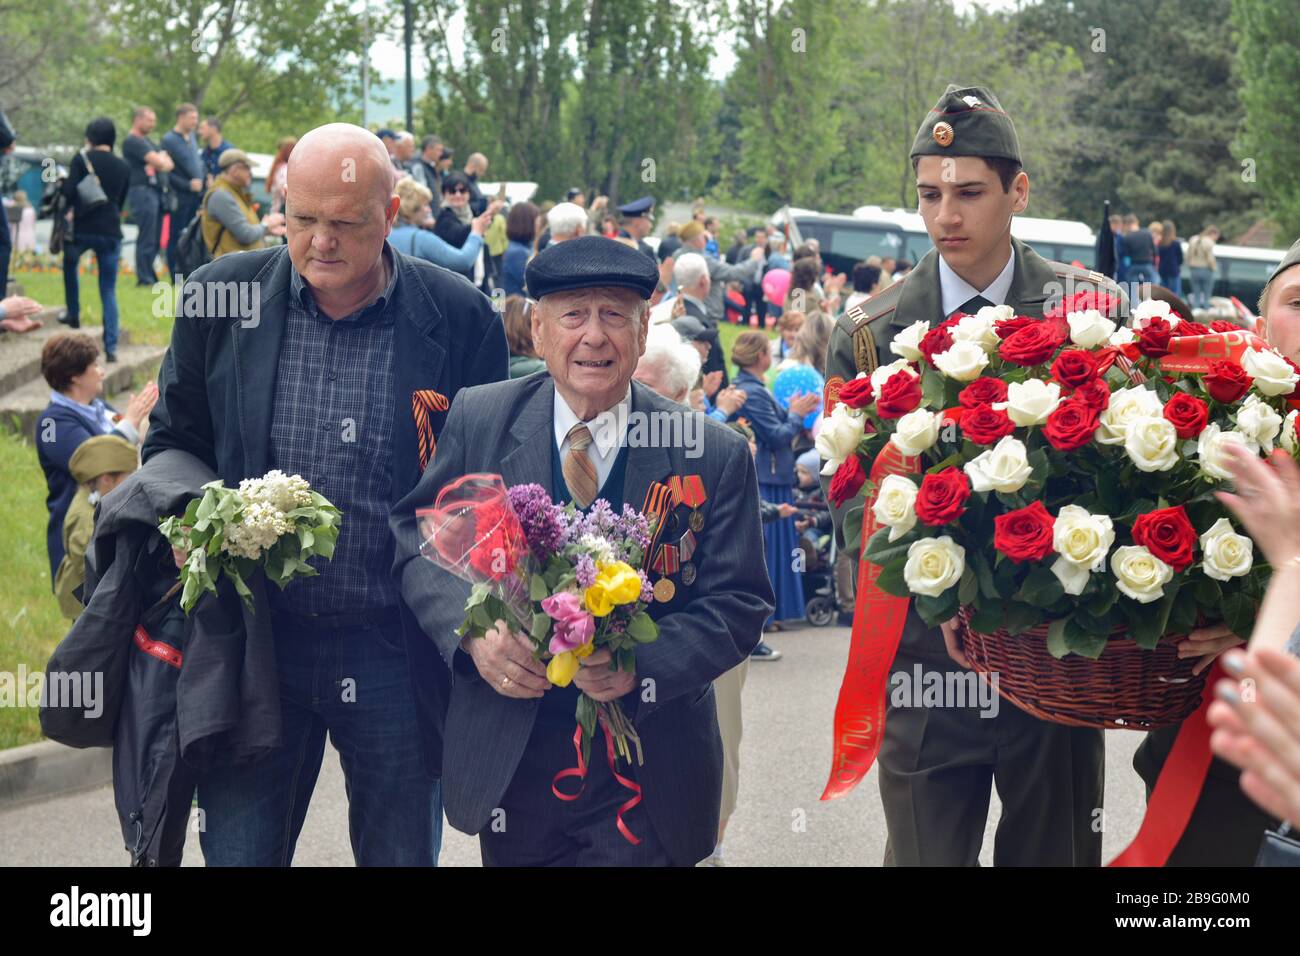 PYATIGORSK, RUSSLAND - 9. MAI 2017: Junger Pfleger und älterer Mann mit einem Gehstock am Siegestag Stockfoto